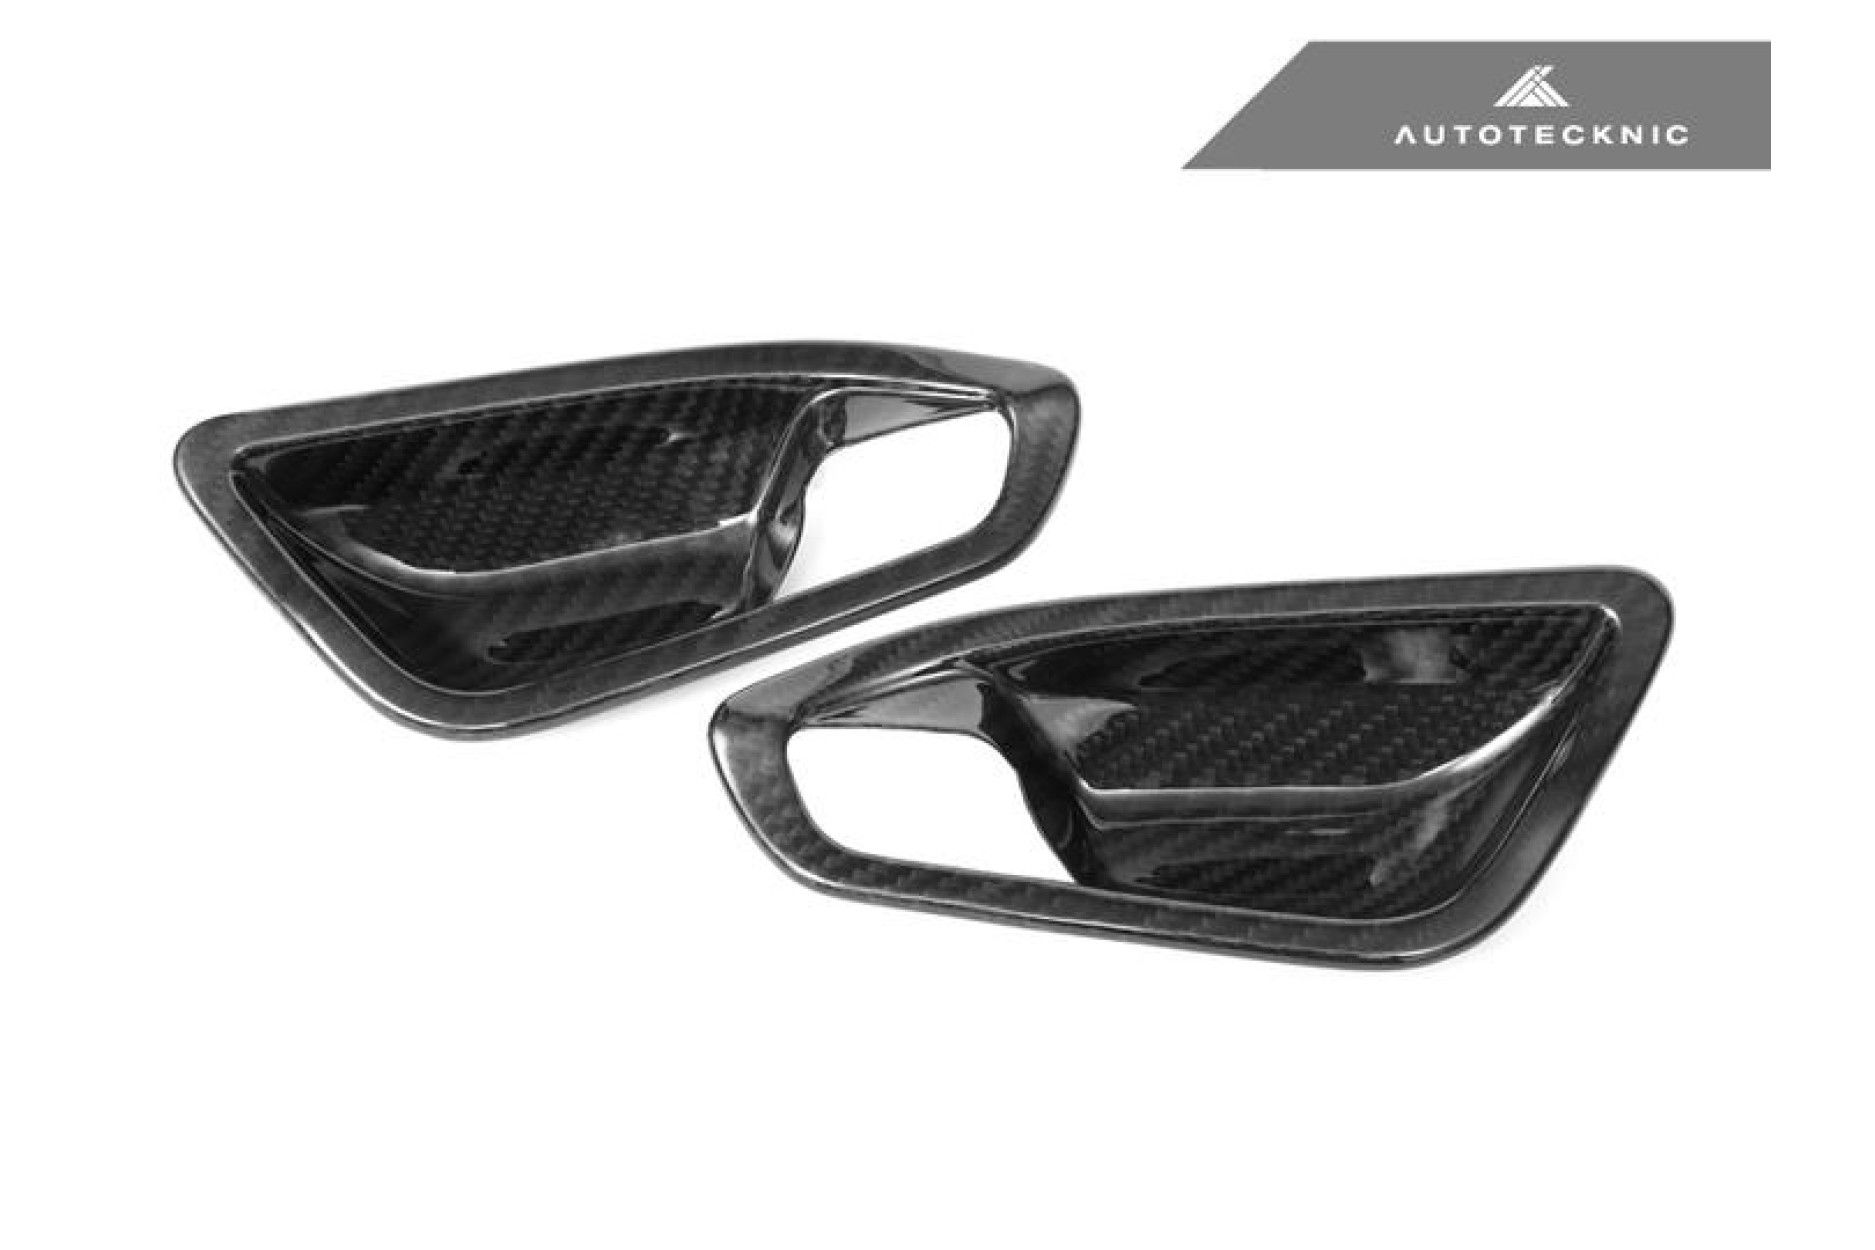 Autotecknic Trockencarbon Innentürgriff-Verkleidung für BMW 1er|2er F20|F22|F87 M2 ohne Lichtpaket matt (6) 